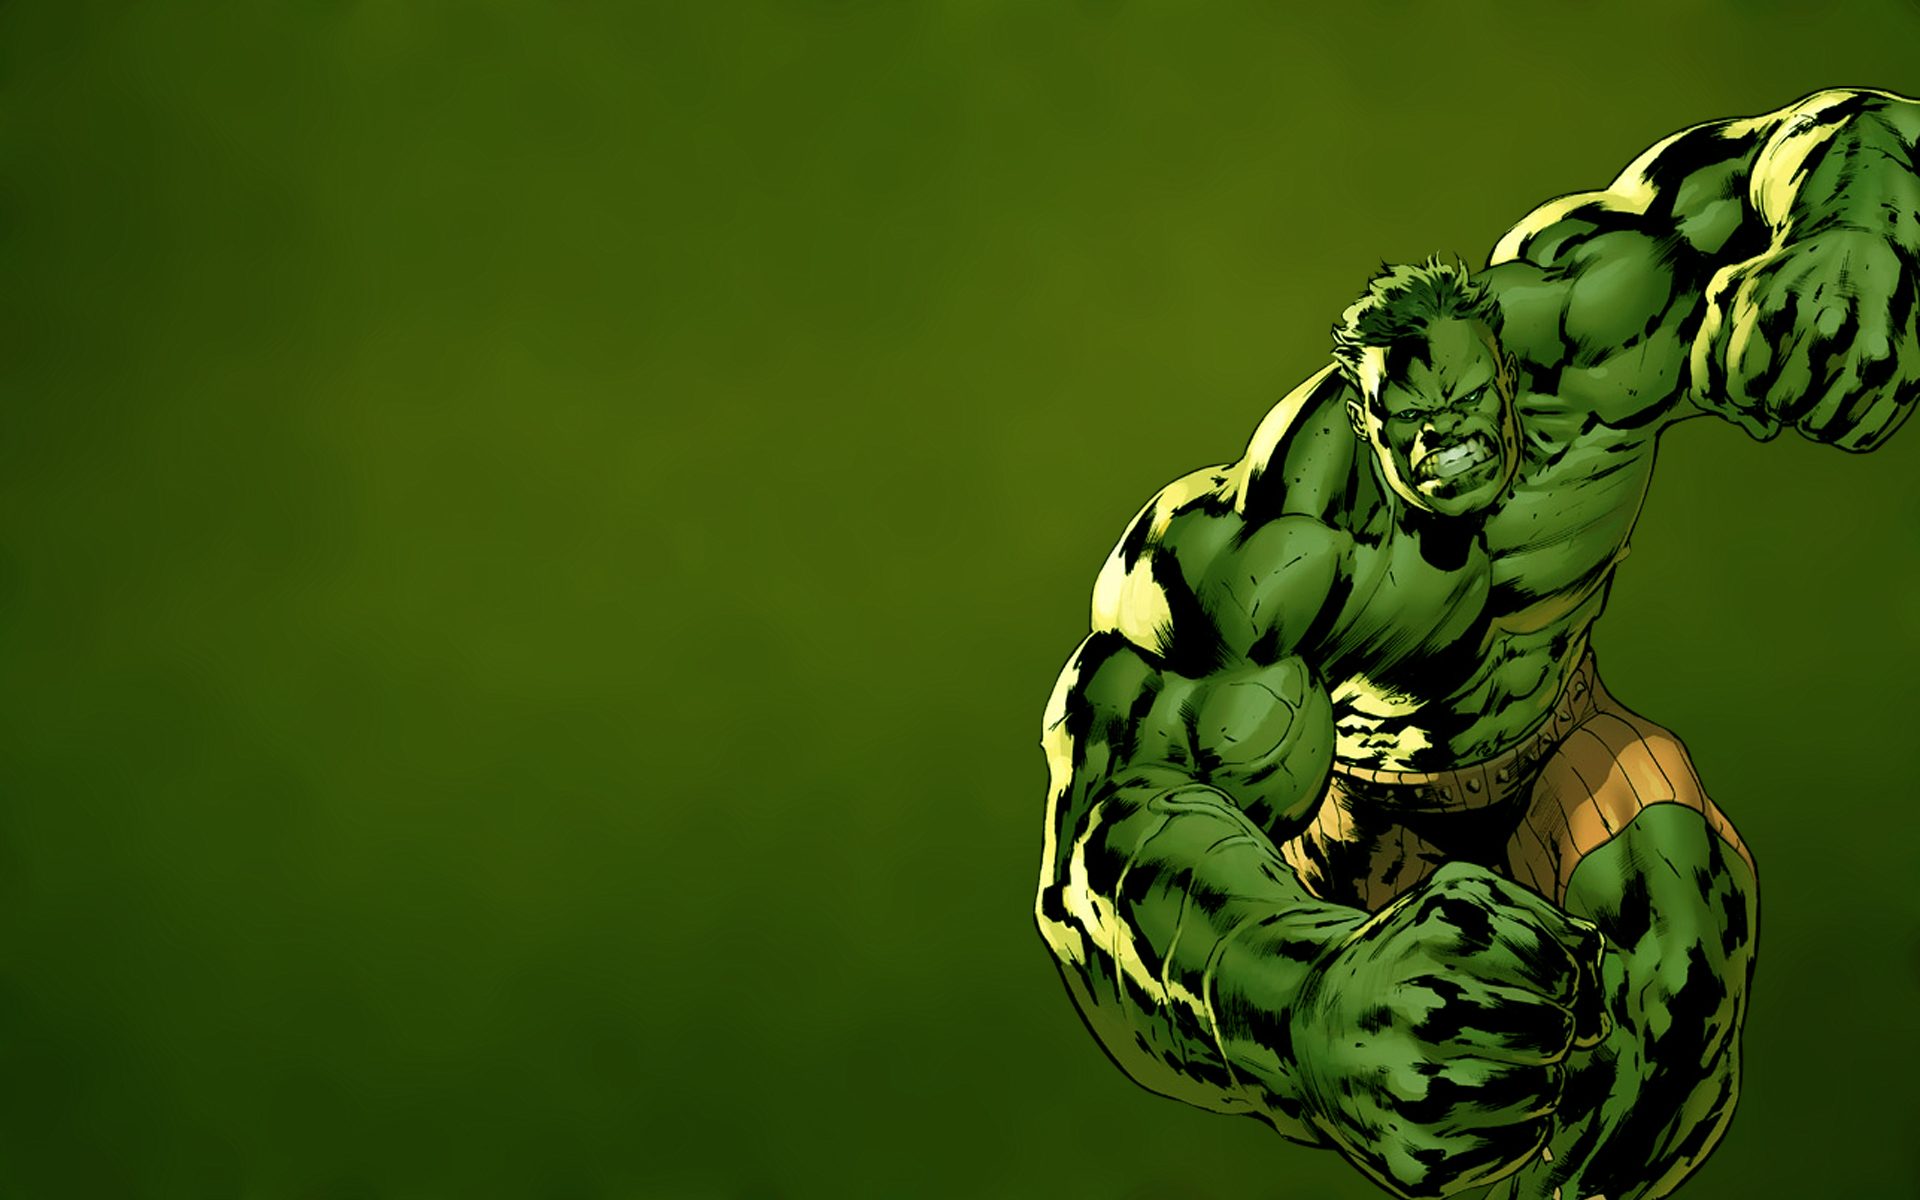 fond d'écran en direct hulk,ponton,vert,super héros,personnage fictif,fiction